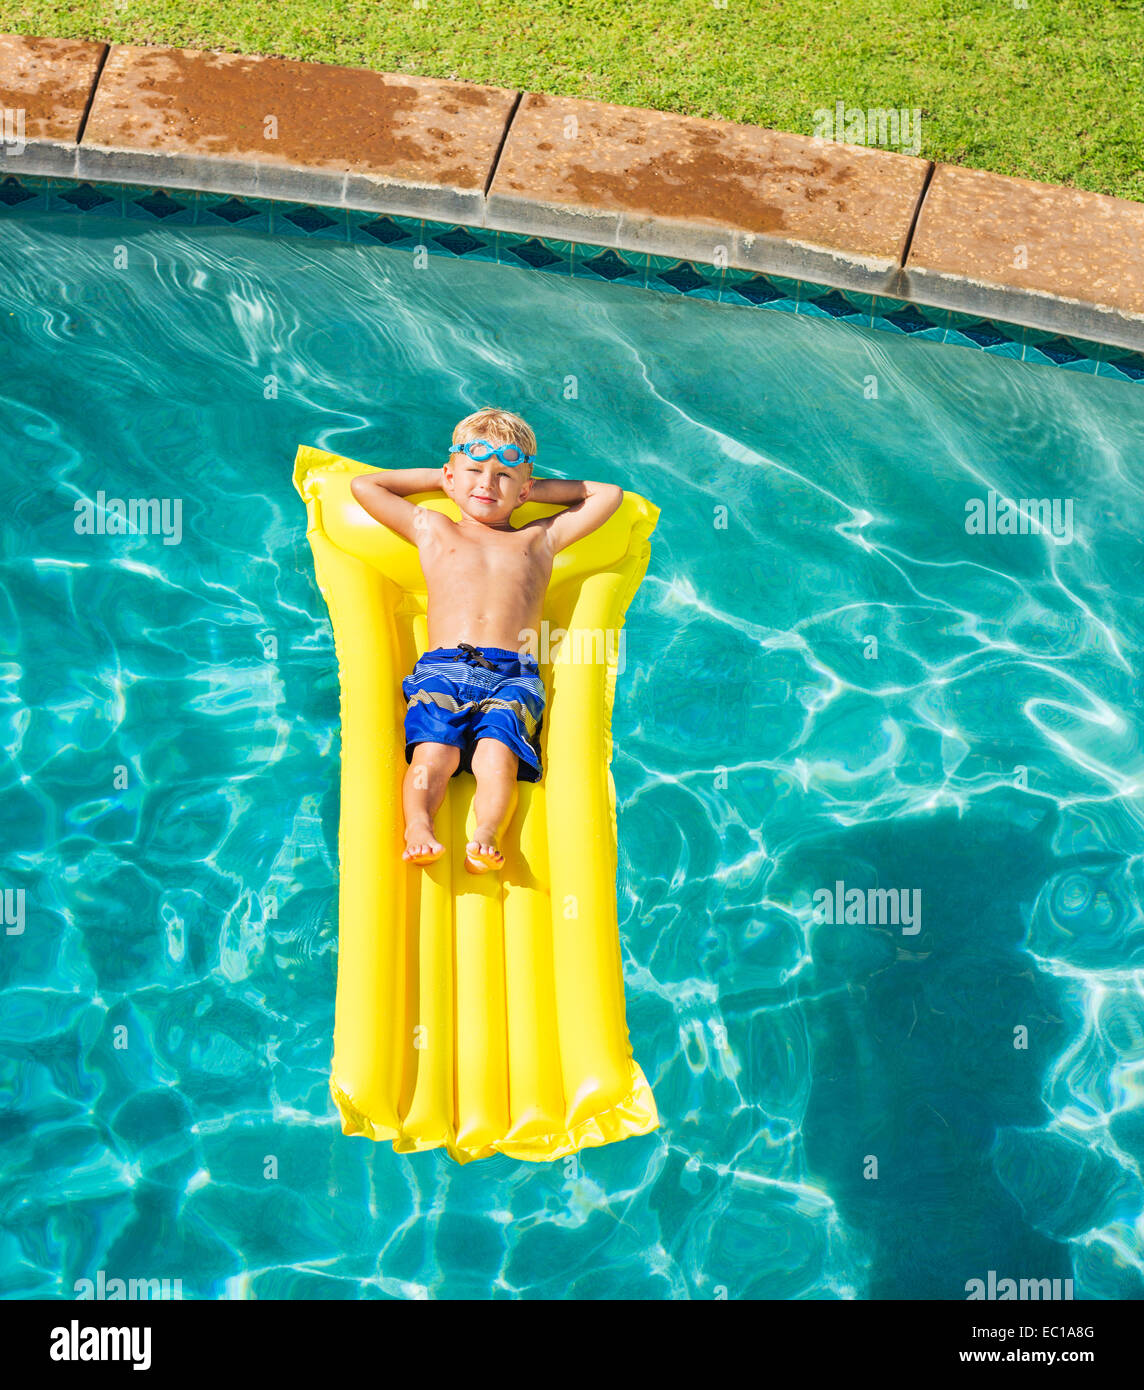 Giovane ragazzo in relax e divertimento in piscina sulla zattera di giallo. La vacanza estiva di divertimento. Stile di vita rilassante concetto. Foto Stock